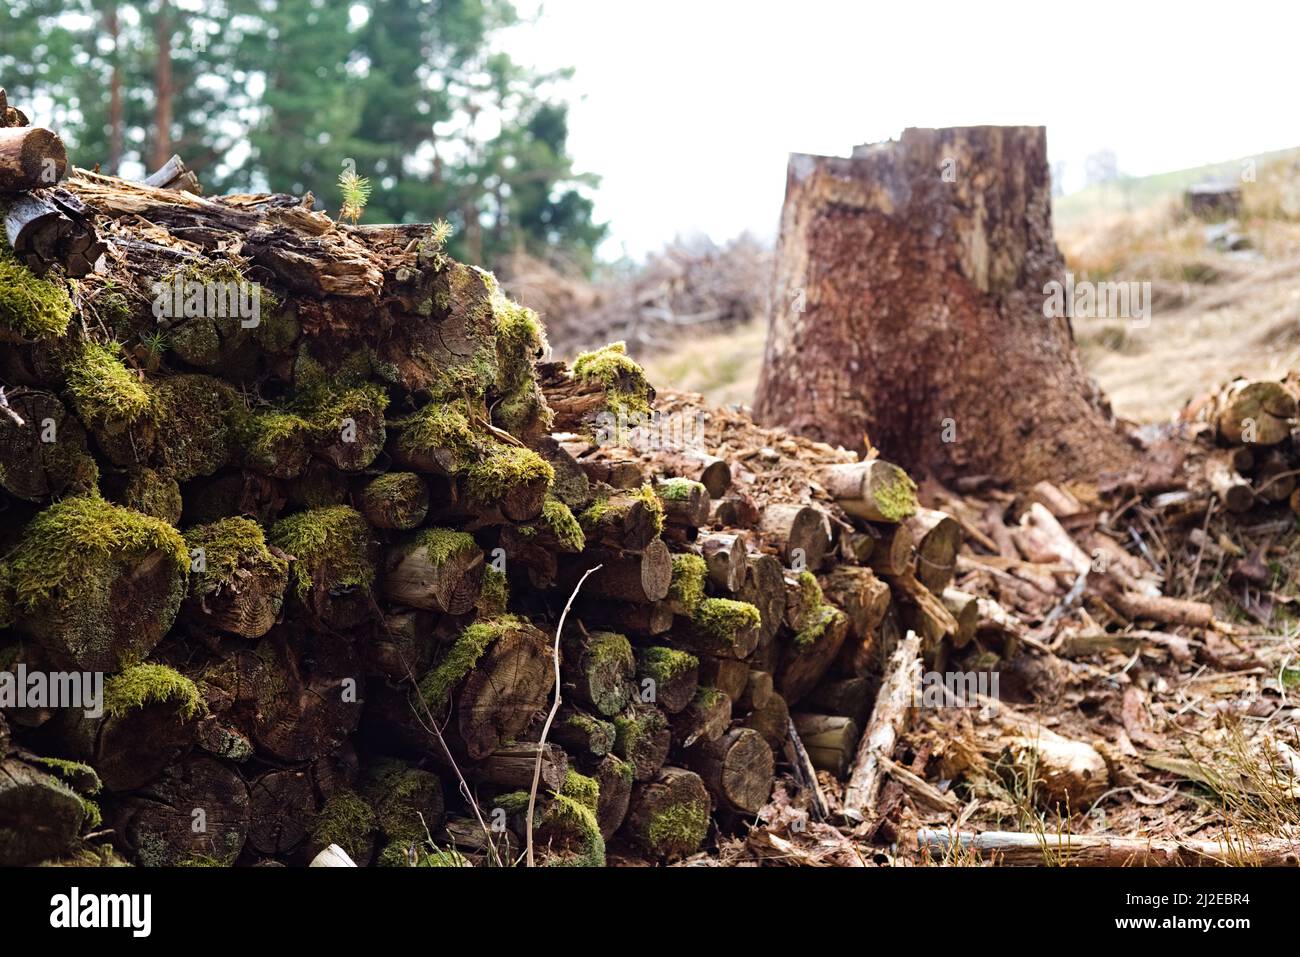 Verfaulende Fichtenstämme, die mit Moos bedeckt sind und in einem Bergwald neben einem Schnittbaum gefunden wurden. Stockfoto